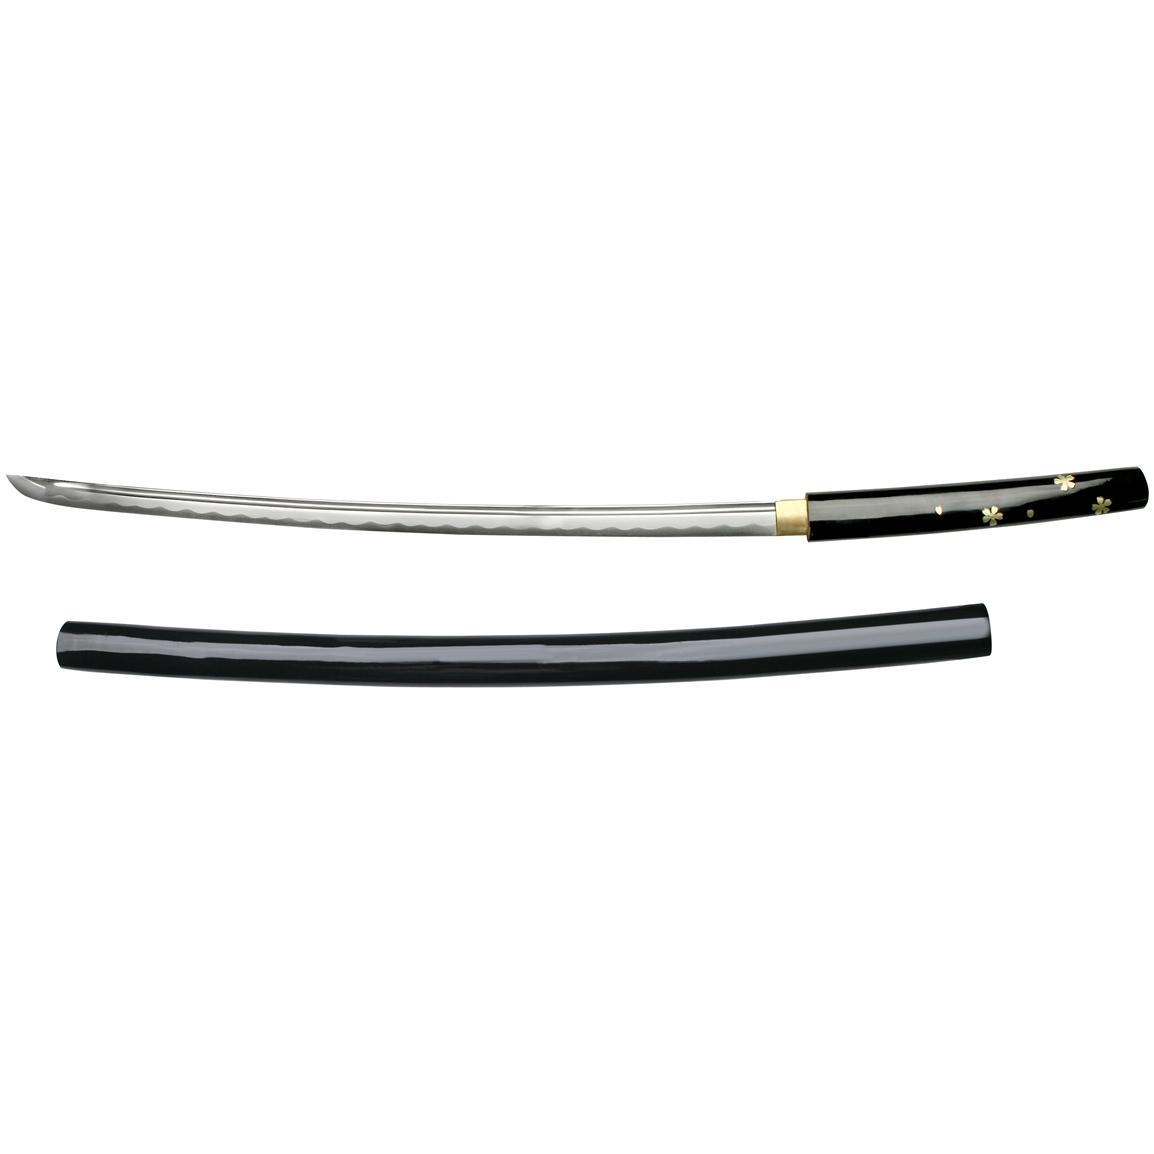 Master Cutlery Black Shirasaya Sword, 38 inch Overall